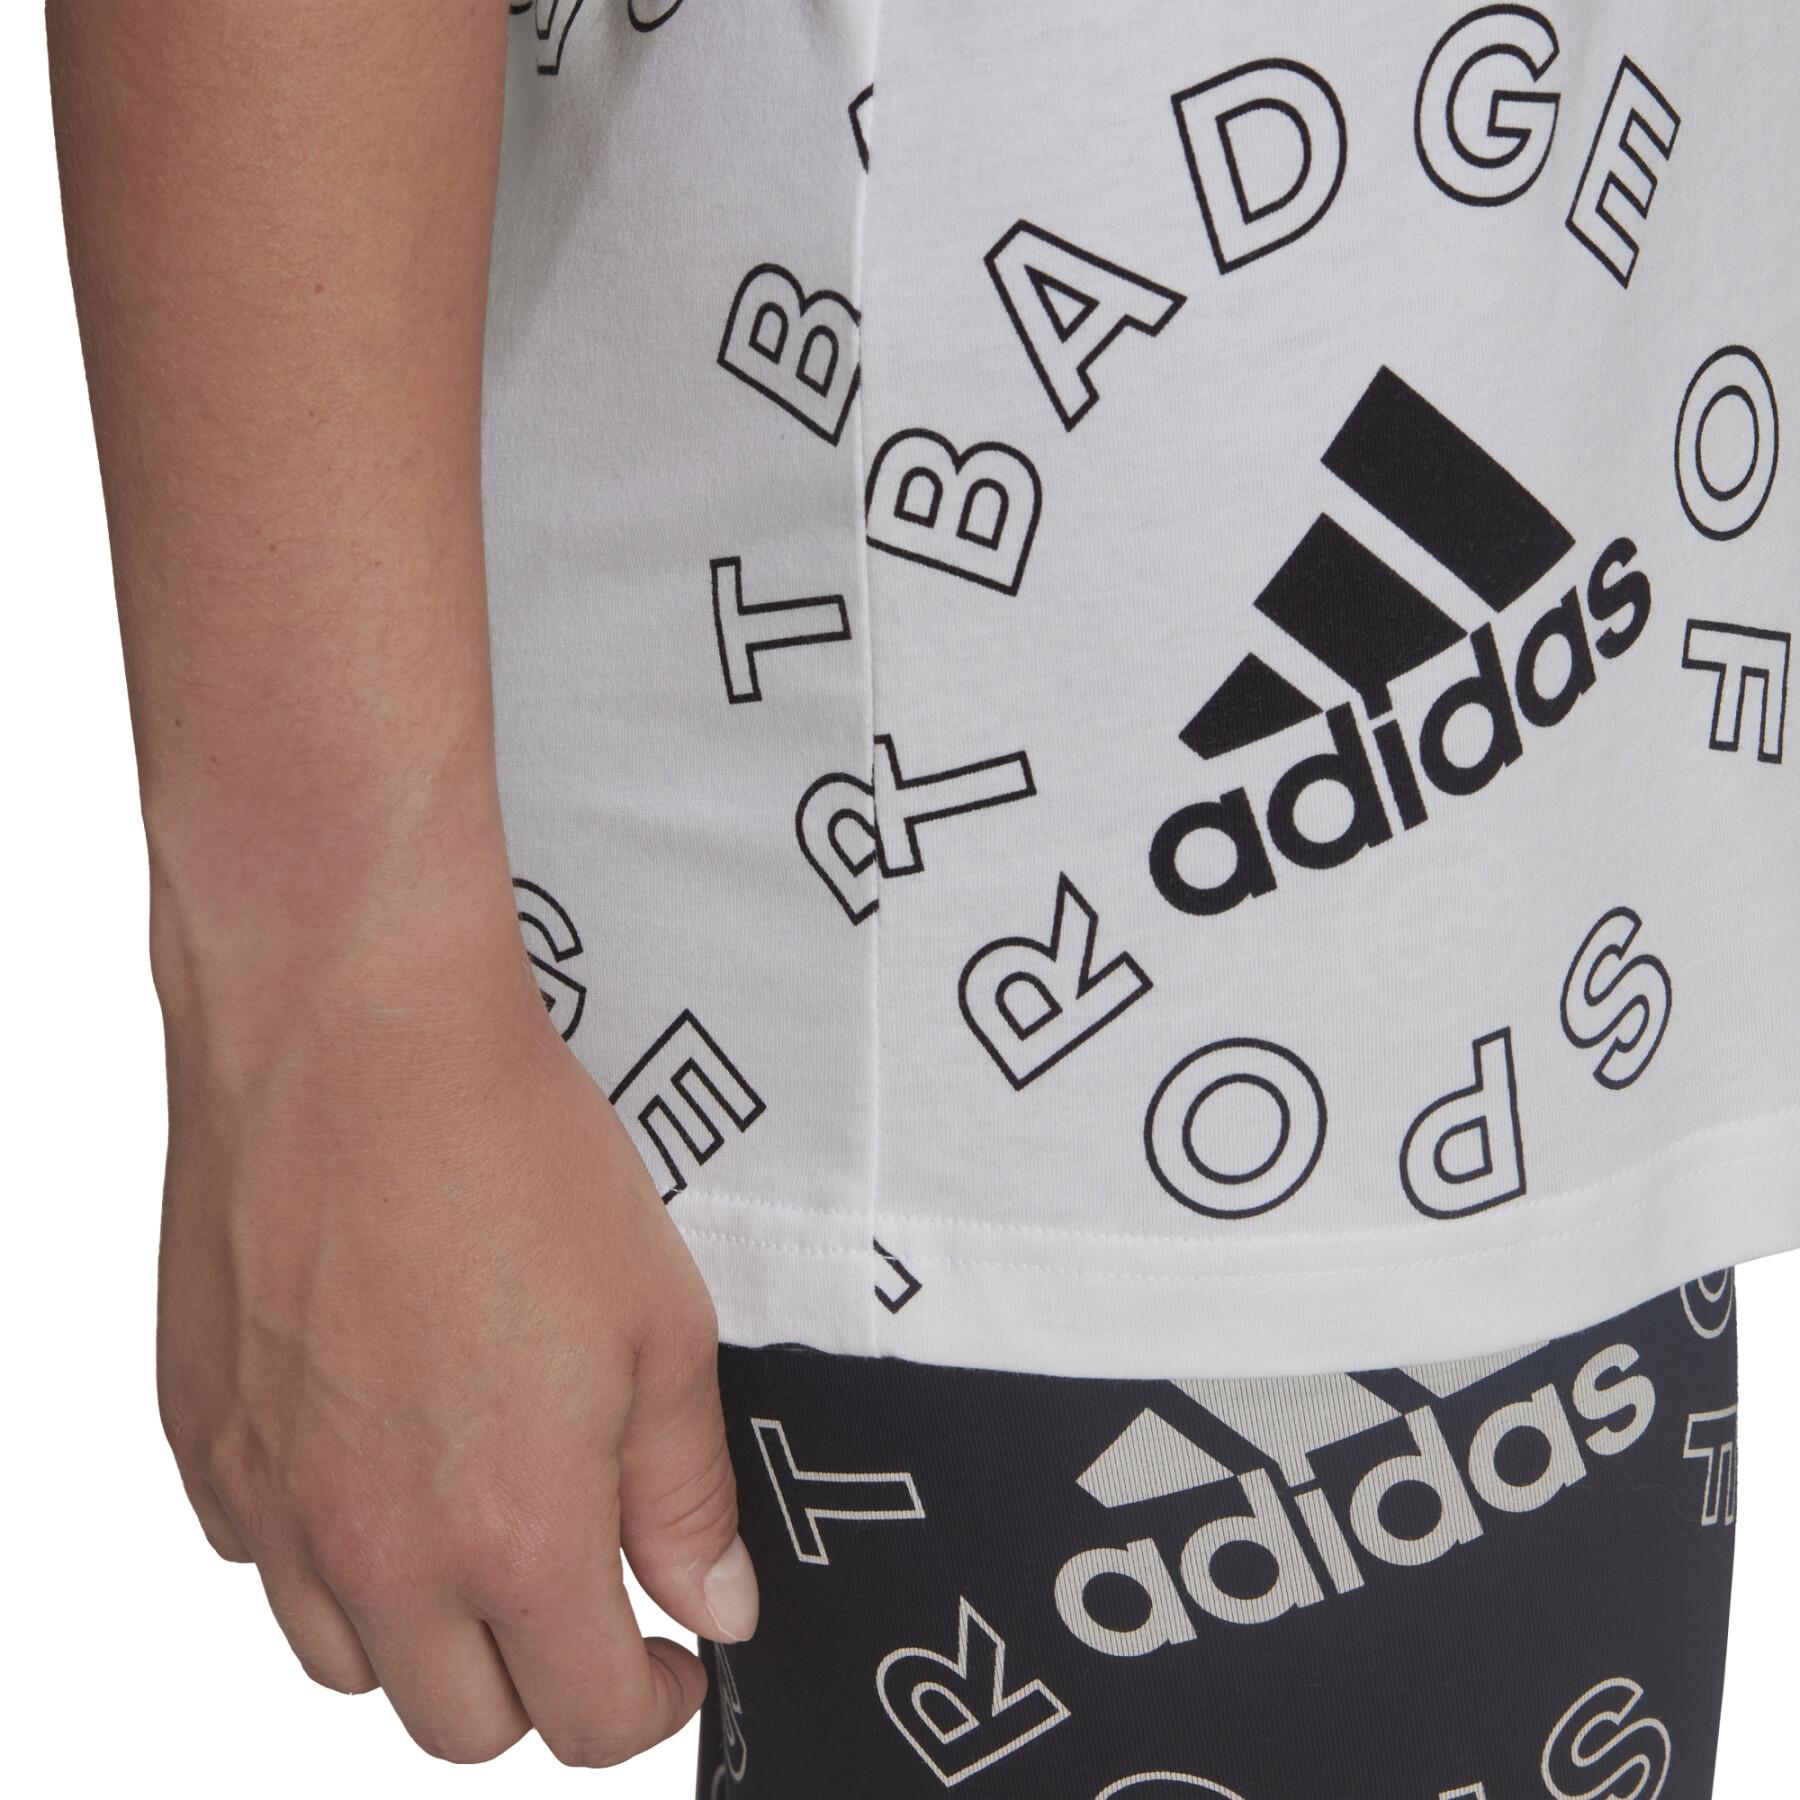 Camiseta feminina adidas Essentials Logo Allover Print